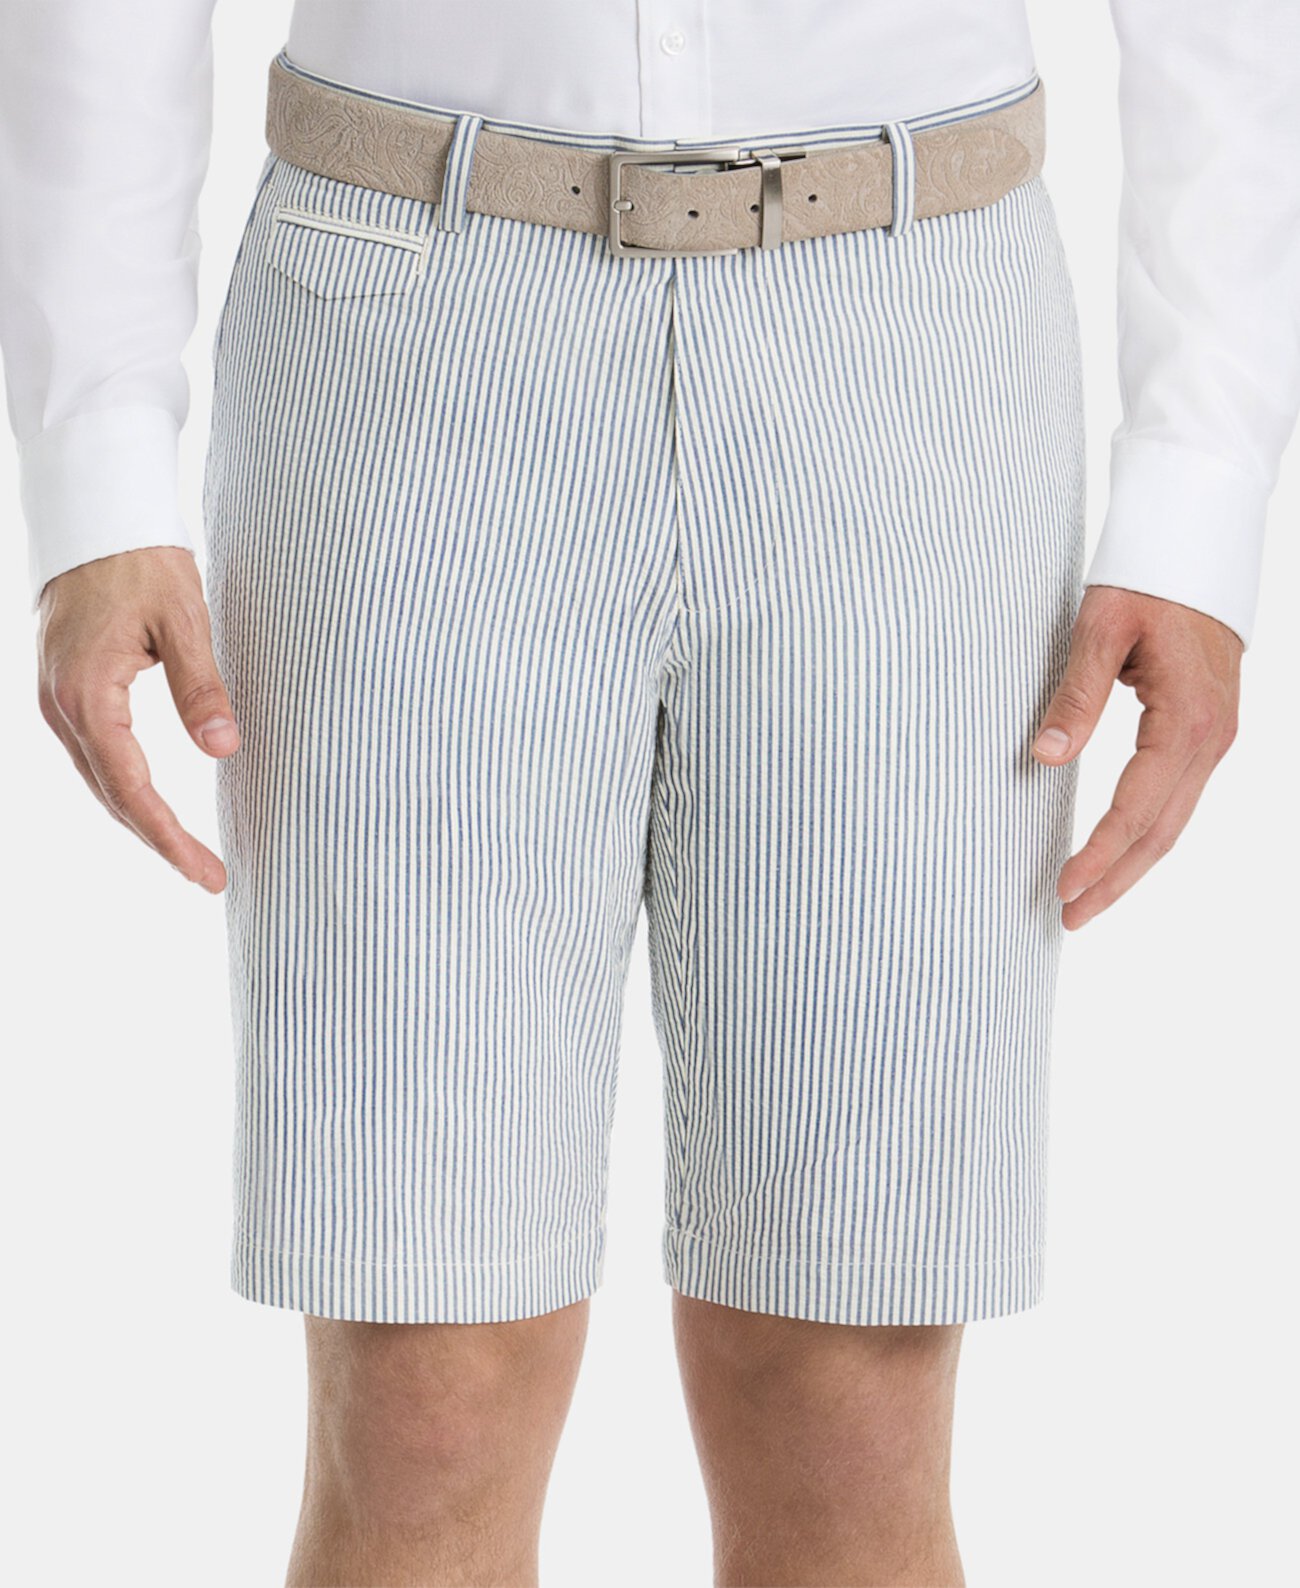 Мужские шорты классического кроя в полоску из хлопка Ralph Lauren